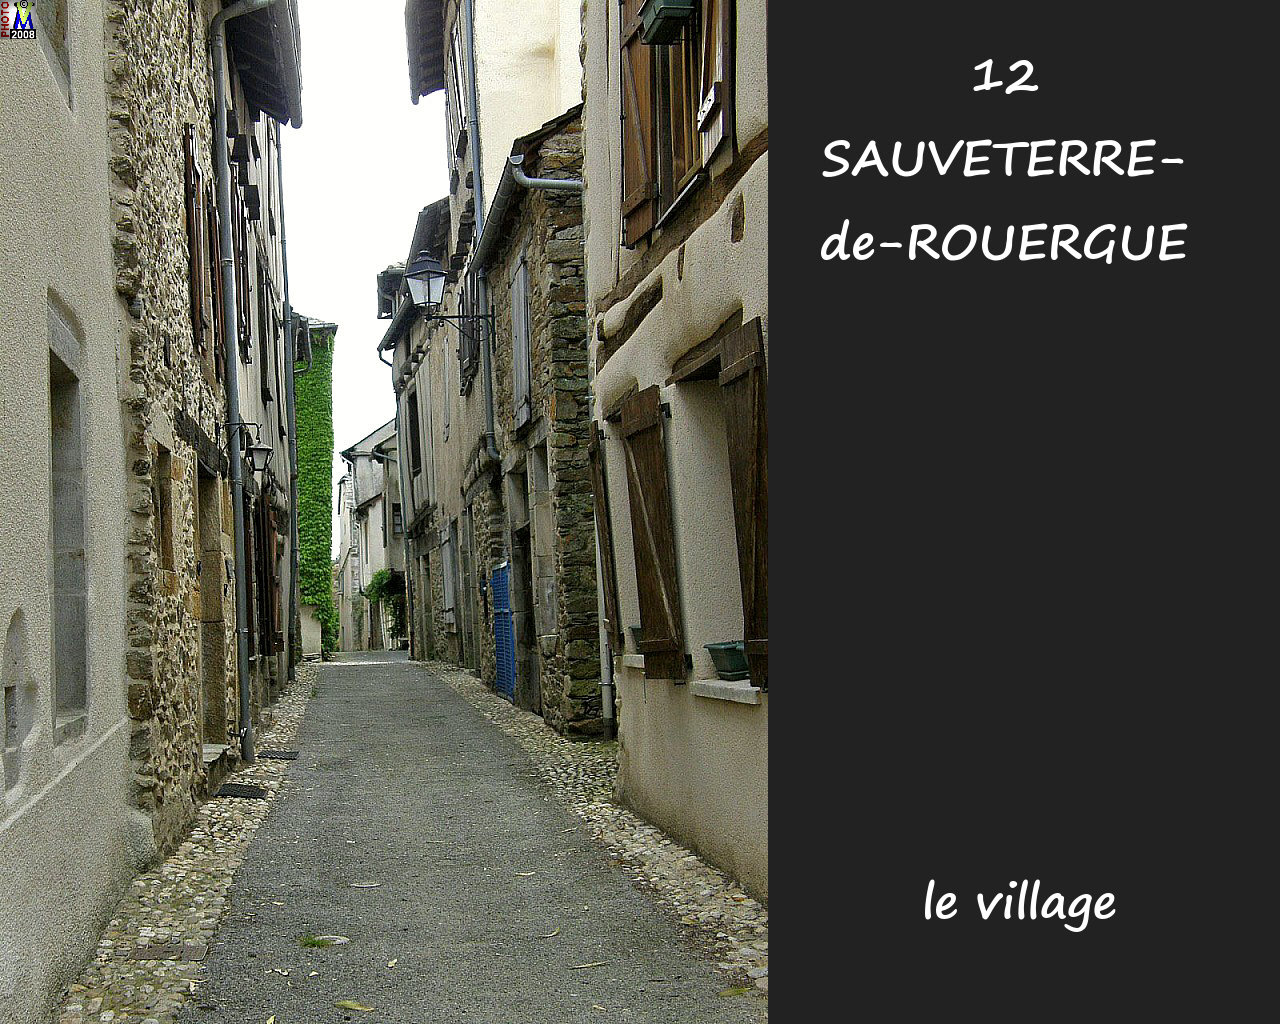 12SAUVETERRE-ROUERGUE_village_162.jpg